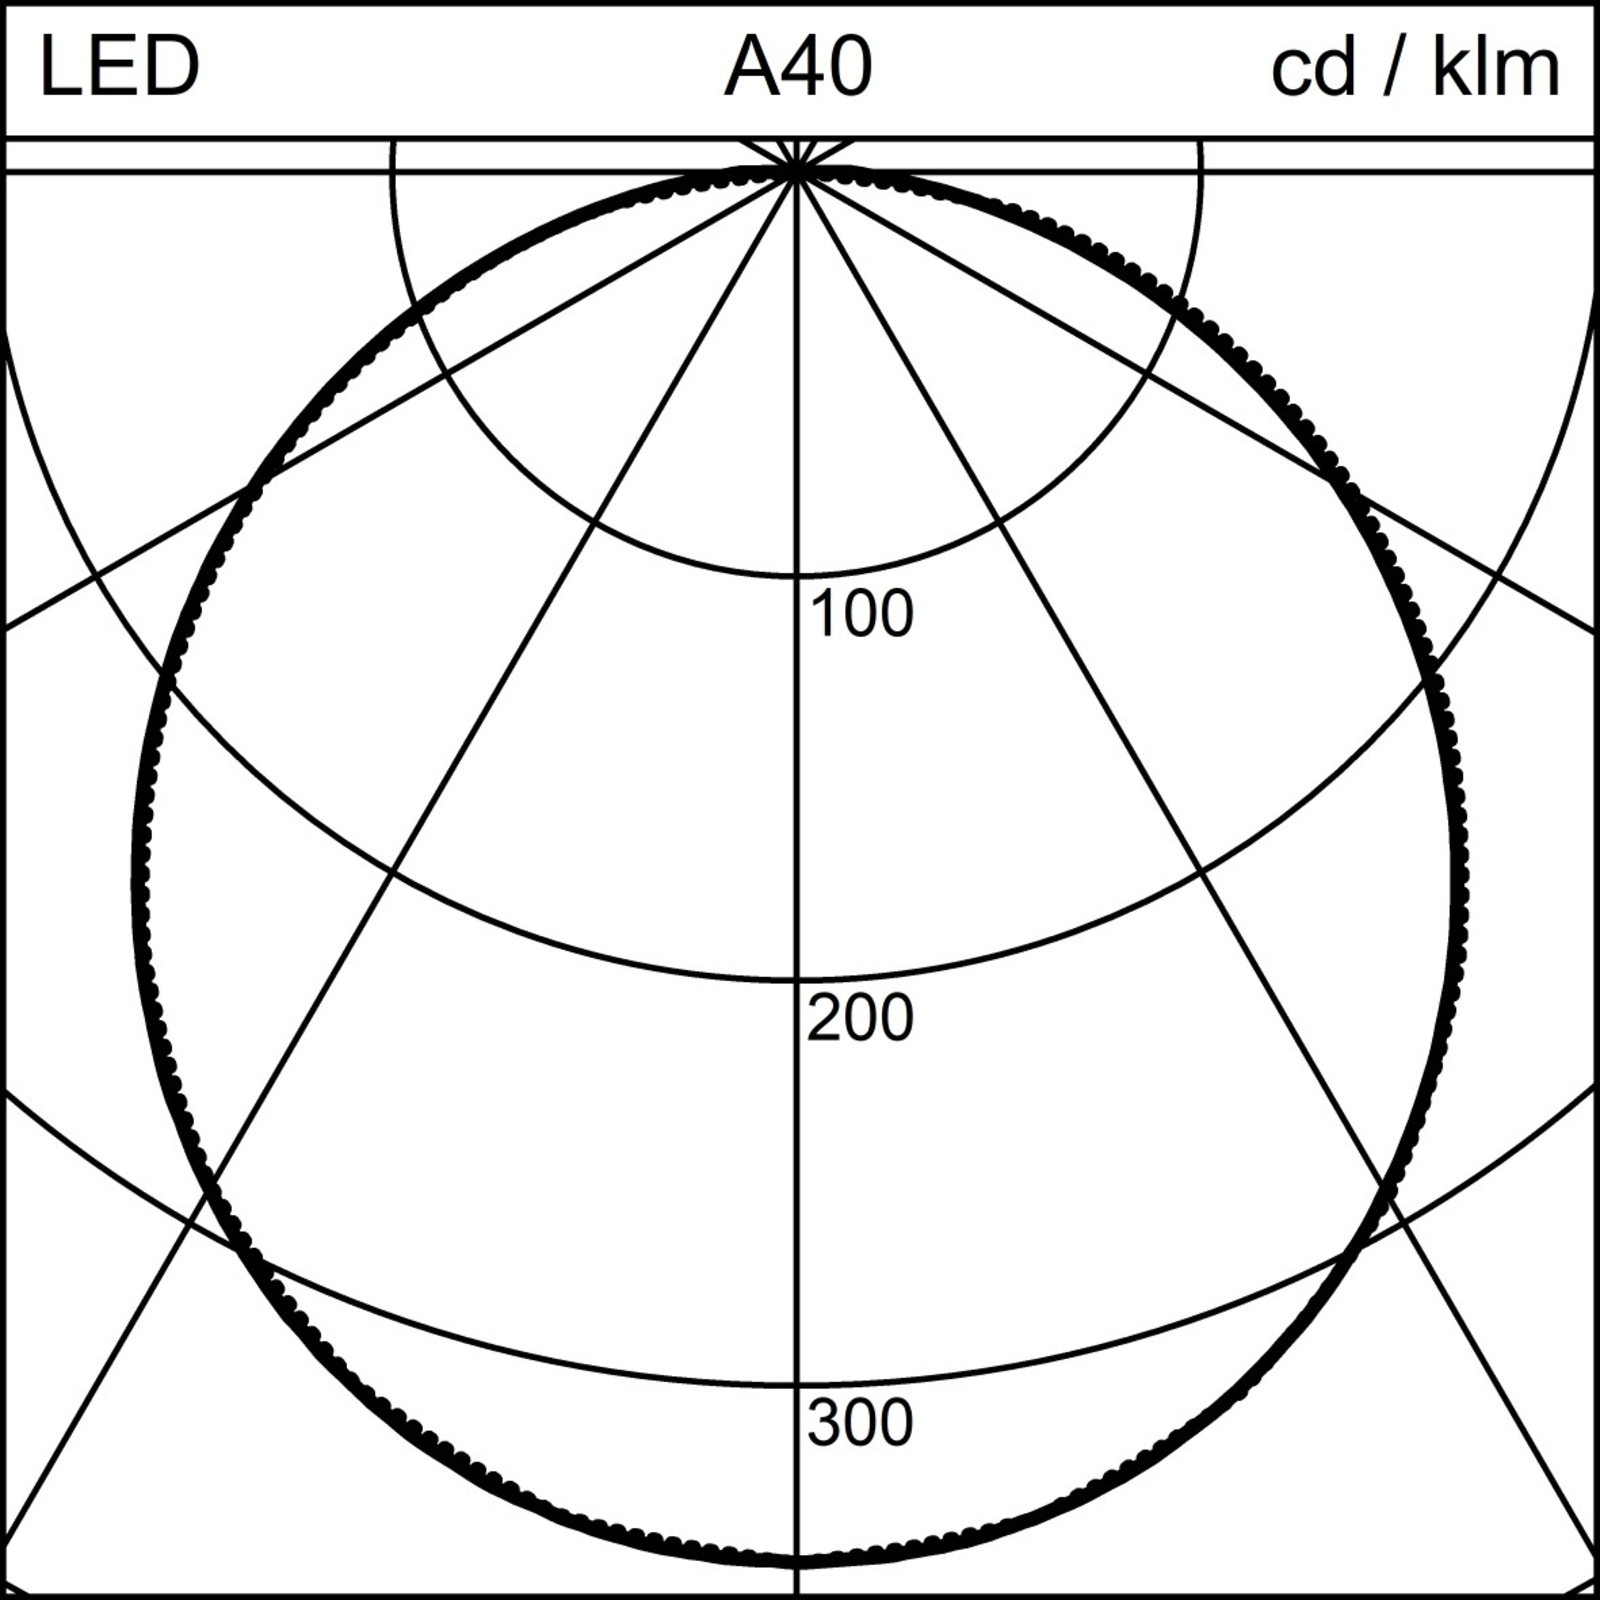 Regent Isigo LED-taklampe med On/Off 35W Ø 40cm